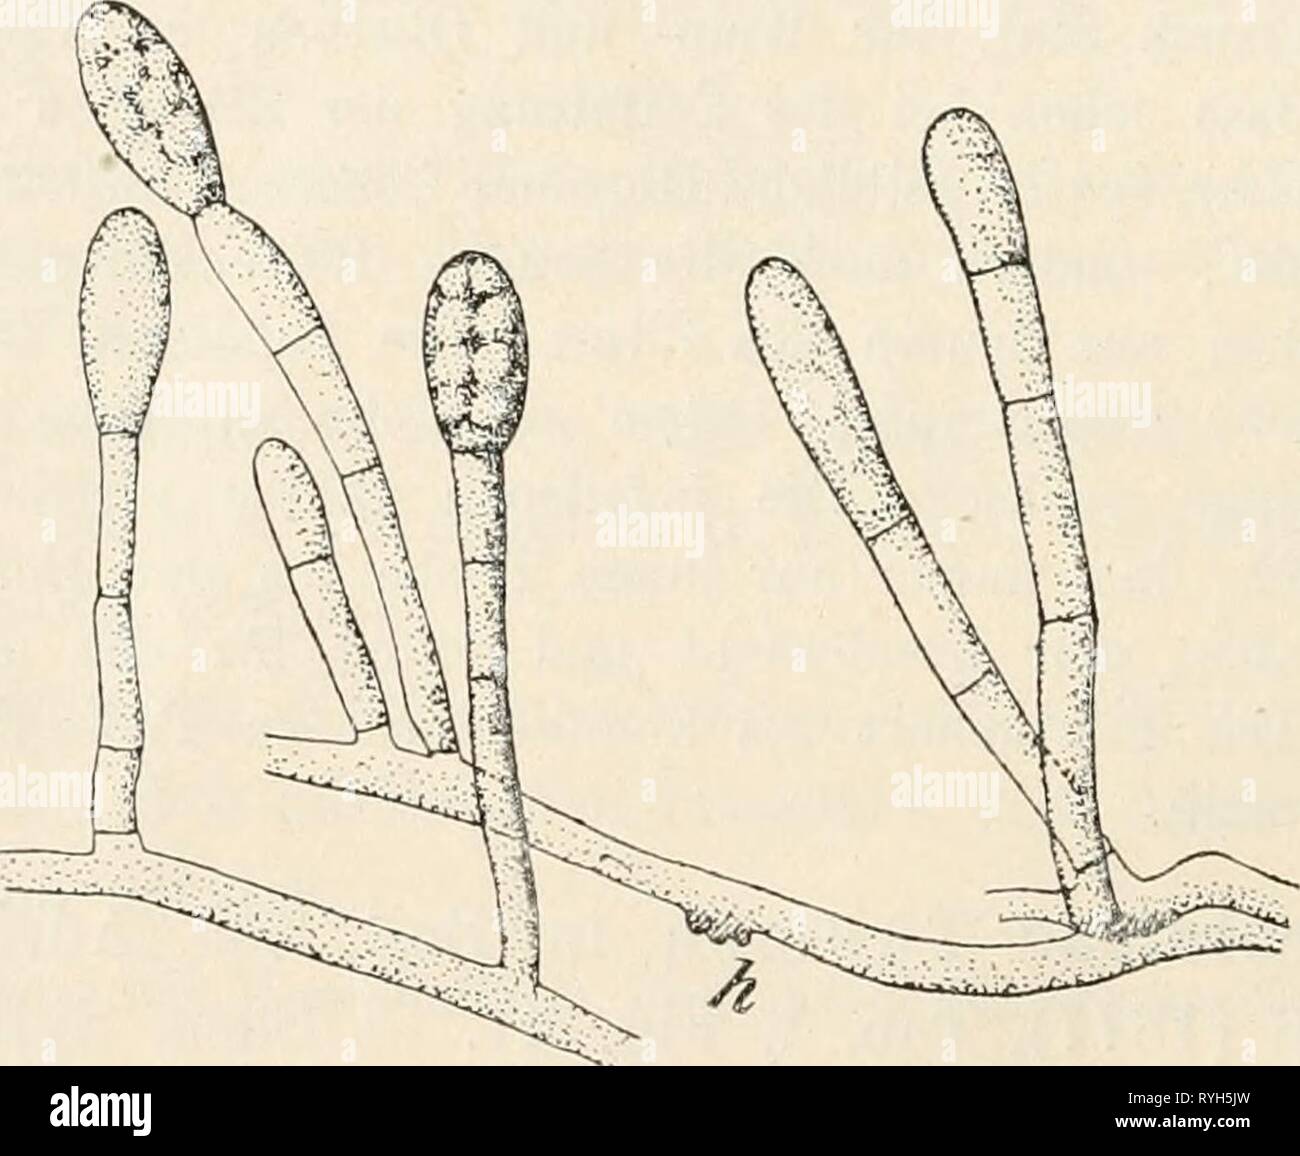 Dr. L. Rabenhorst's Kryptogamen-Flora von Deutschland, Oesterreich und der Schweiz  drlrabenhorstskr0108rabe Year: 1907  84 cylindrisch ellipsoidisch, beidendig abgerundet, hyalin, 35—45 /t lang und 10—15 fi, breit, mit spärlichen Oeltropfen im Innern. Auf noch hängenden Früchten von Euphorbia cyparissias bei Berlin (Sydow). Vielleicht ist die Art identich mit Oidium eu2)horbiae Thüm. mscr. (Krems in Niederösterreicli auf Euphorbia dulcis) und würde dann wie diese in den Ent- wicklungskreis von Sphaerotheca euphorbiae (Cast.) gehören. 183. 0. Tuckeri Berk. in Gard. Chron. 1847, p. 779. — Sacc. Stock Photo